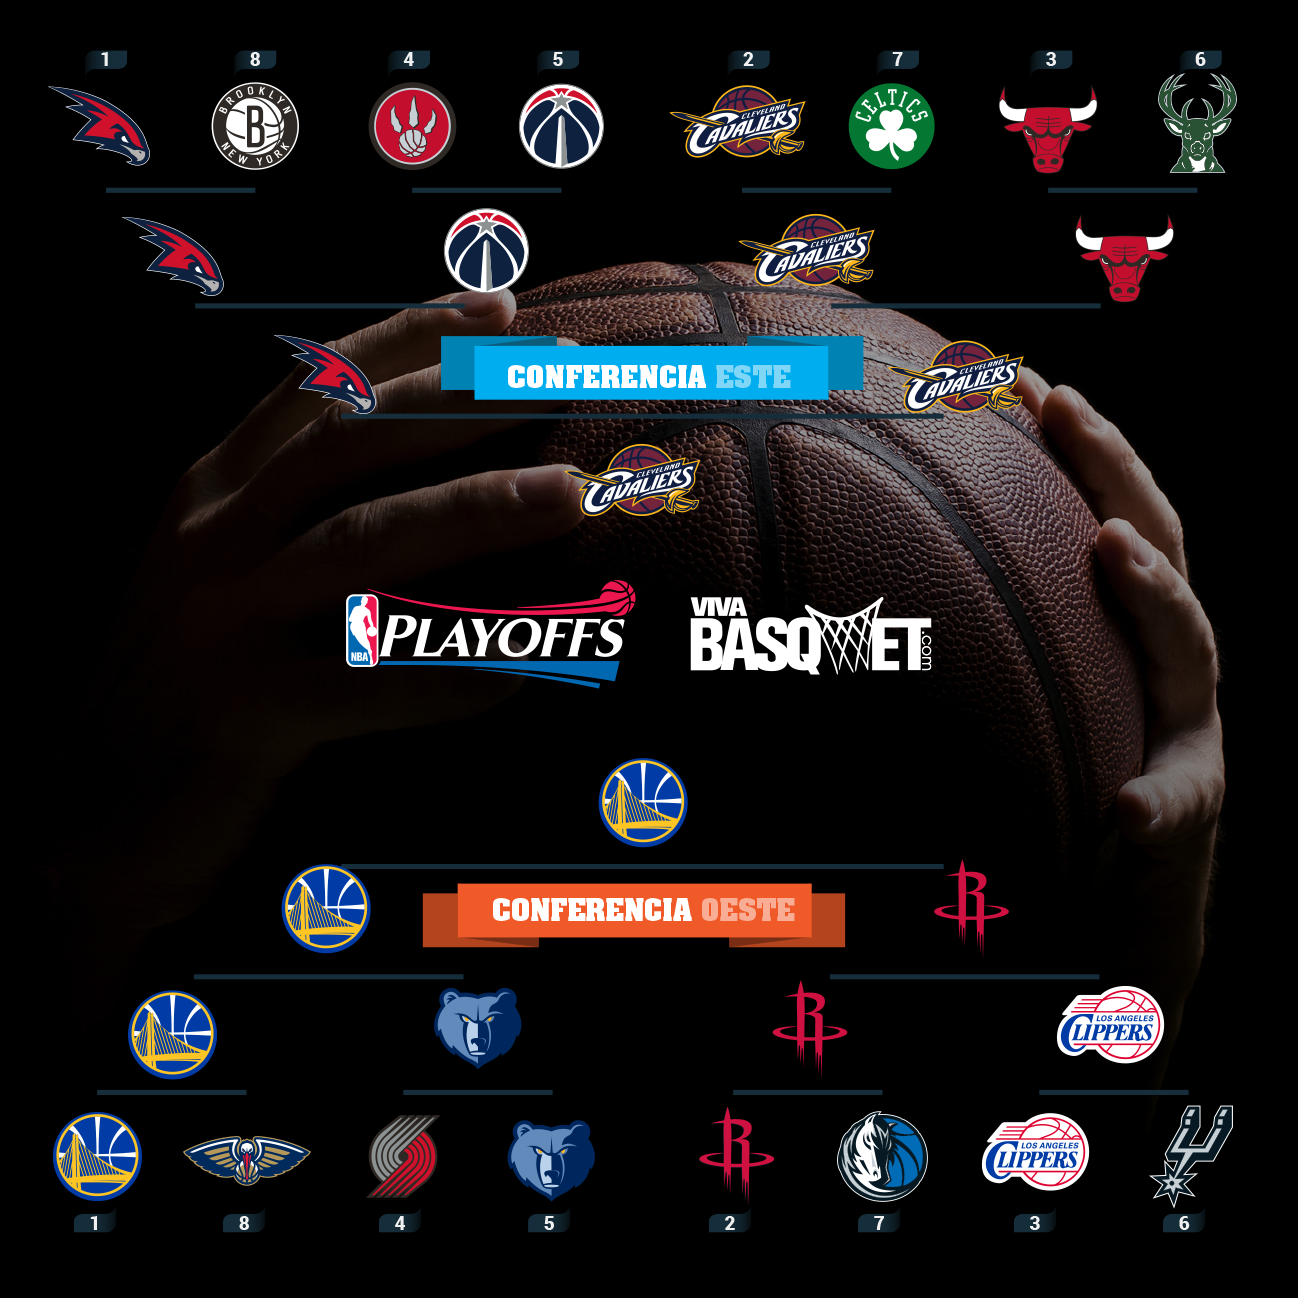 Viva Basquet te trae el braquet oficial de los playoffs 2015 de la NBA